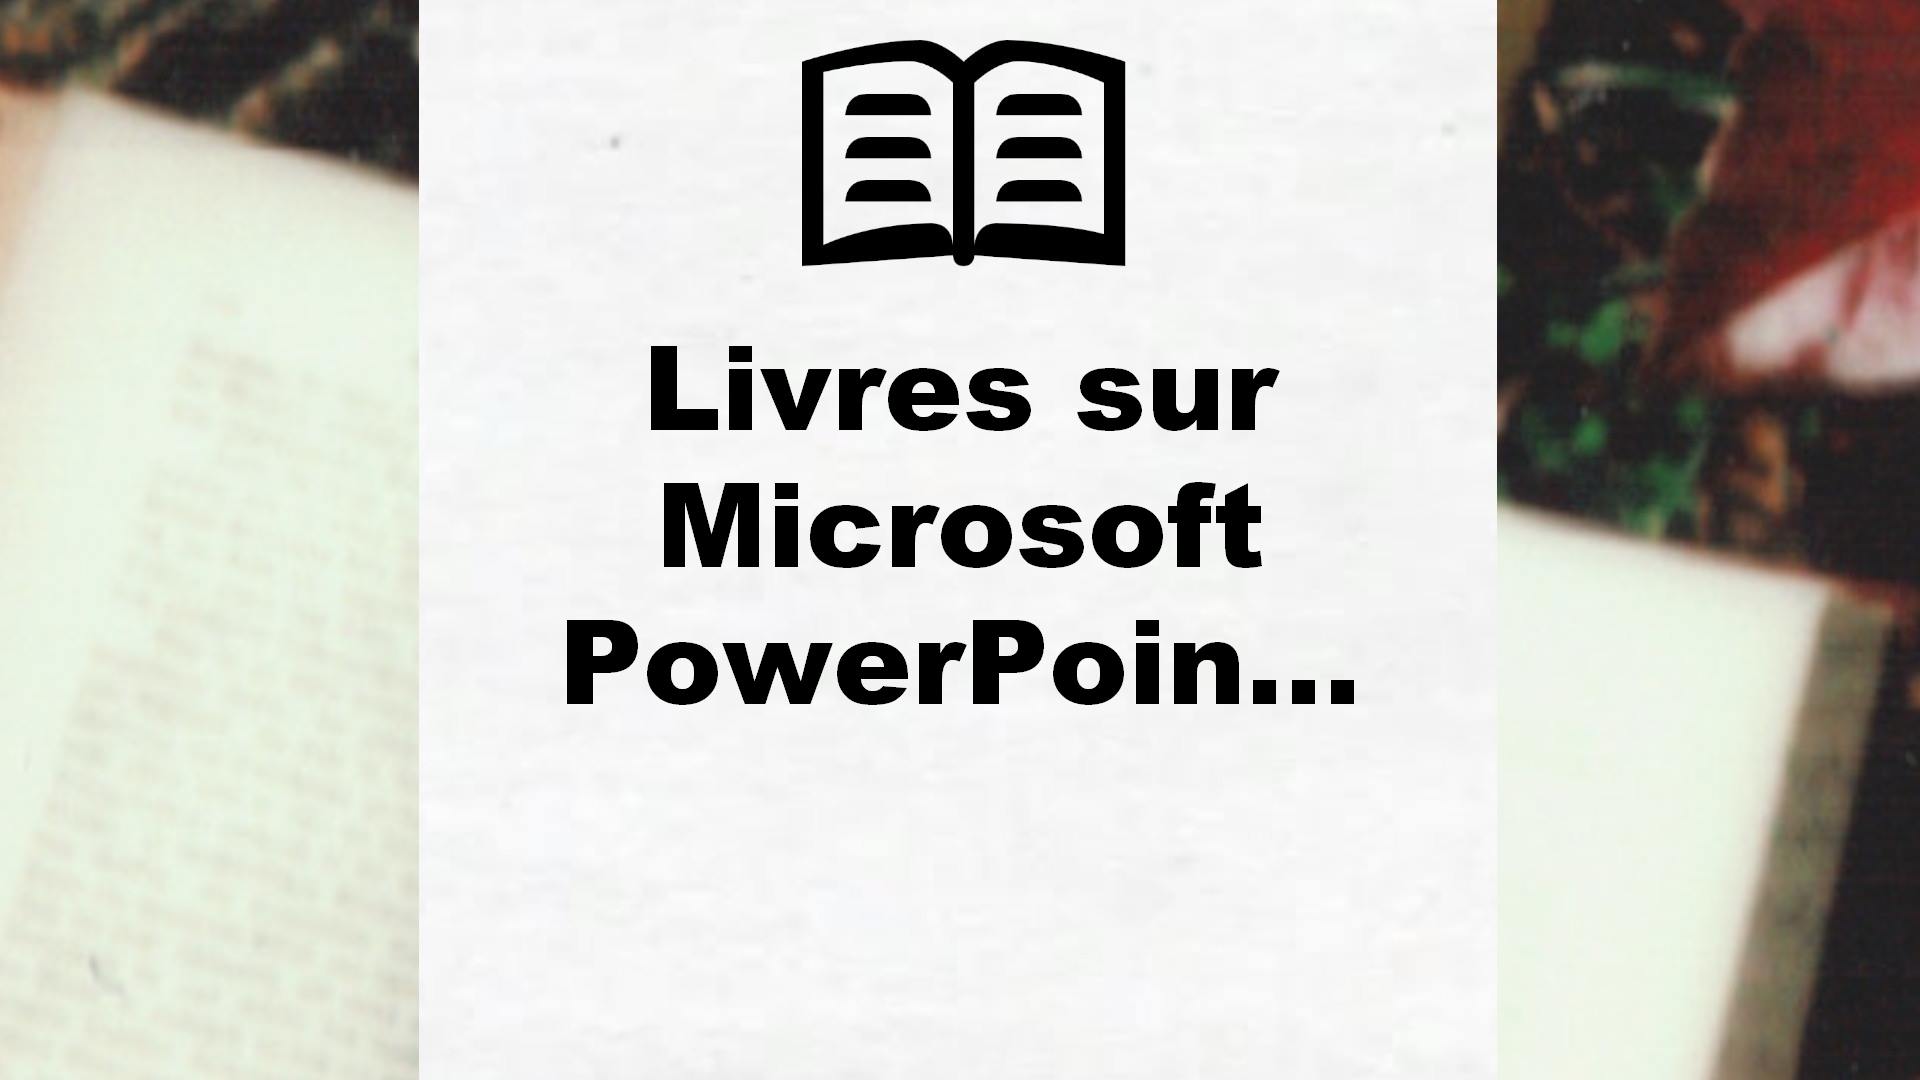 Livres sur Microsoft PowerPoint